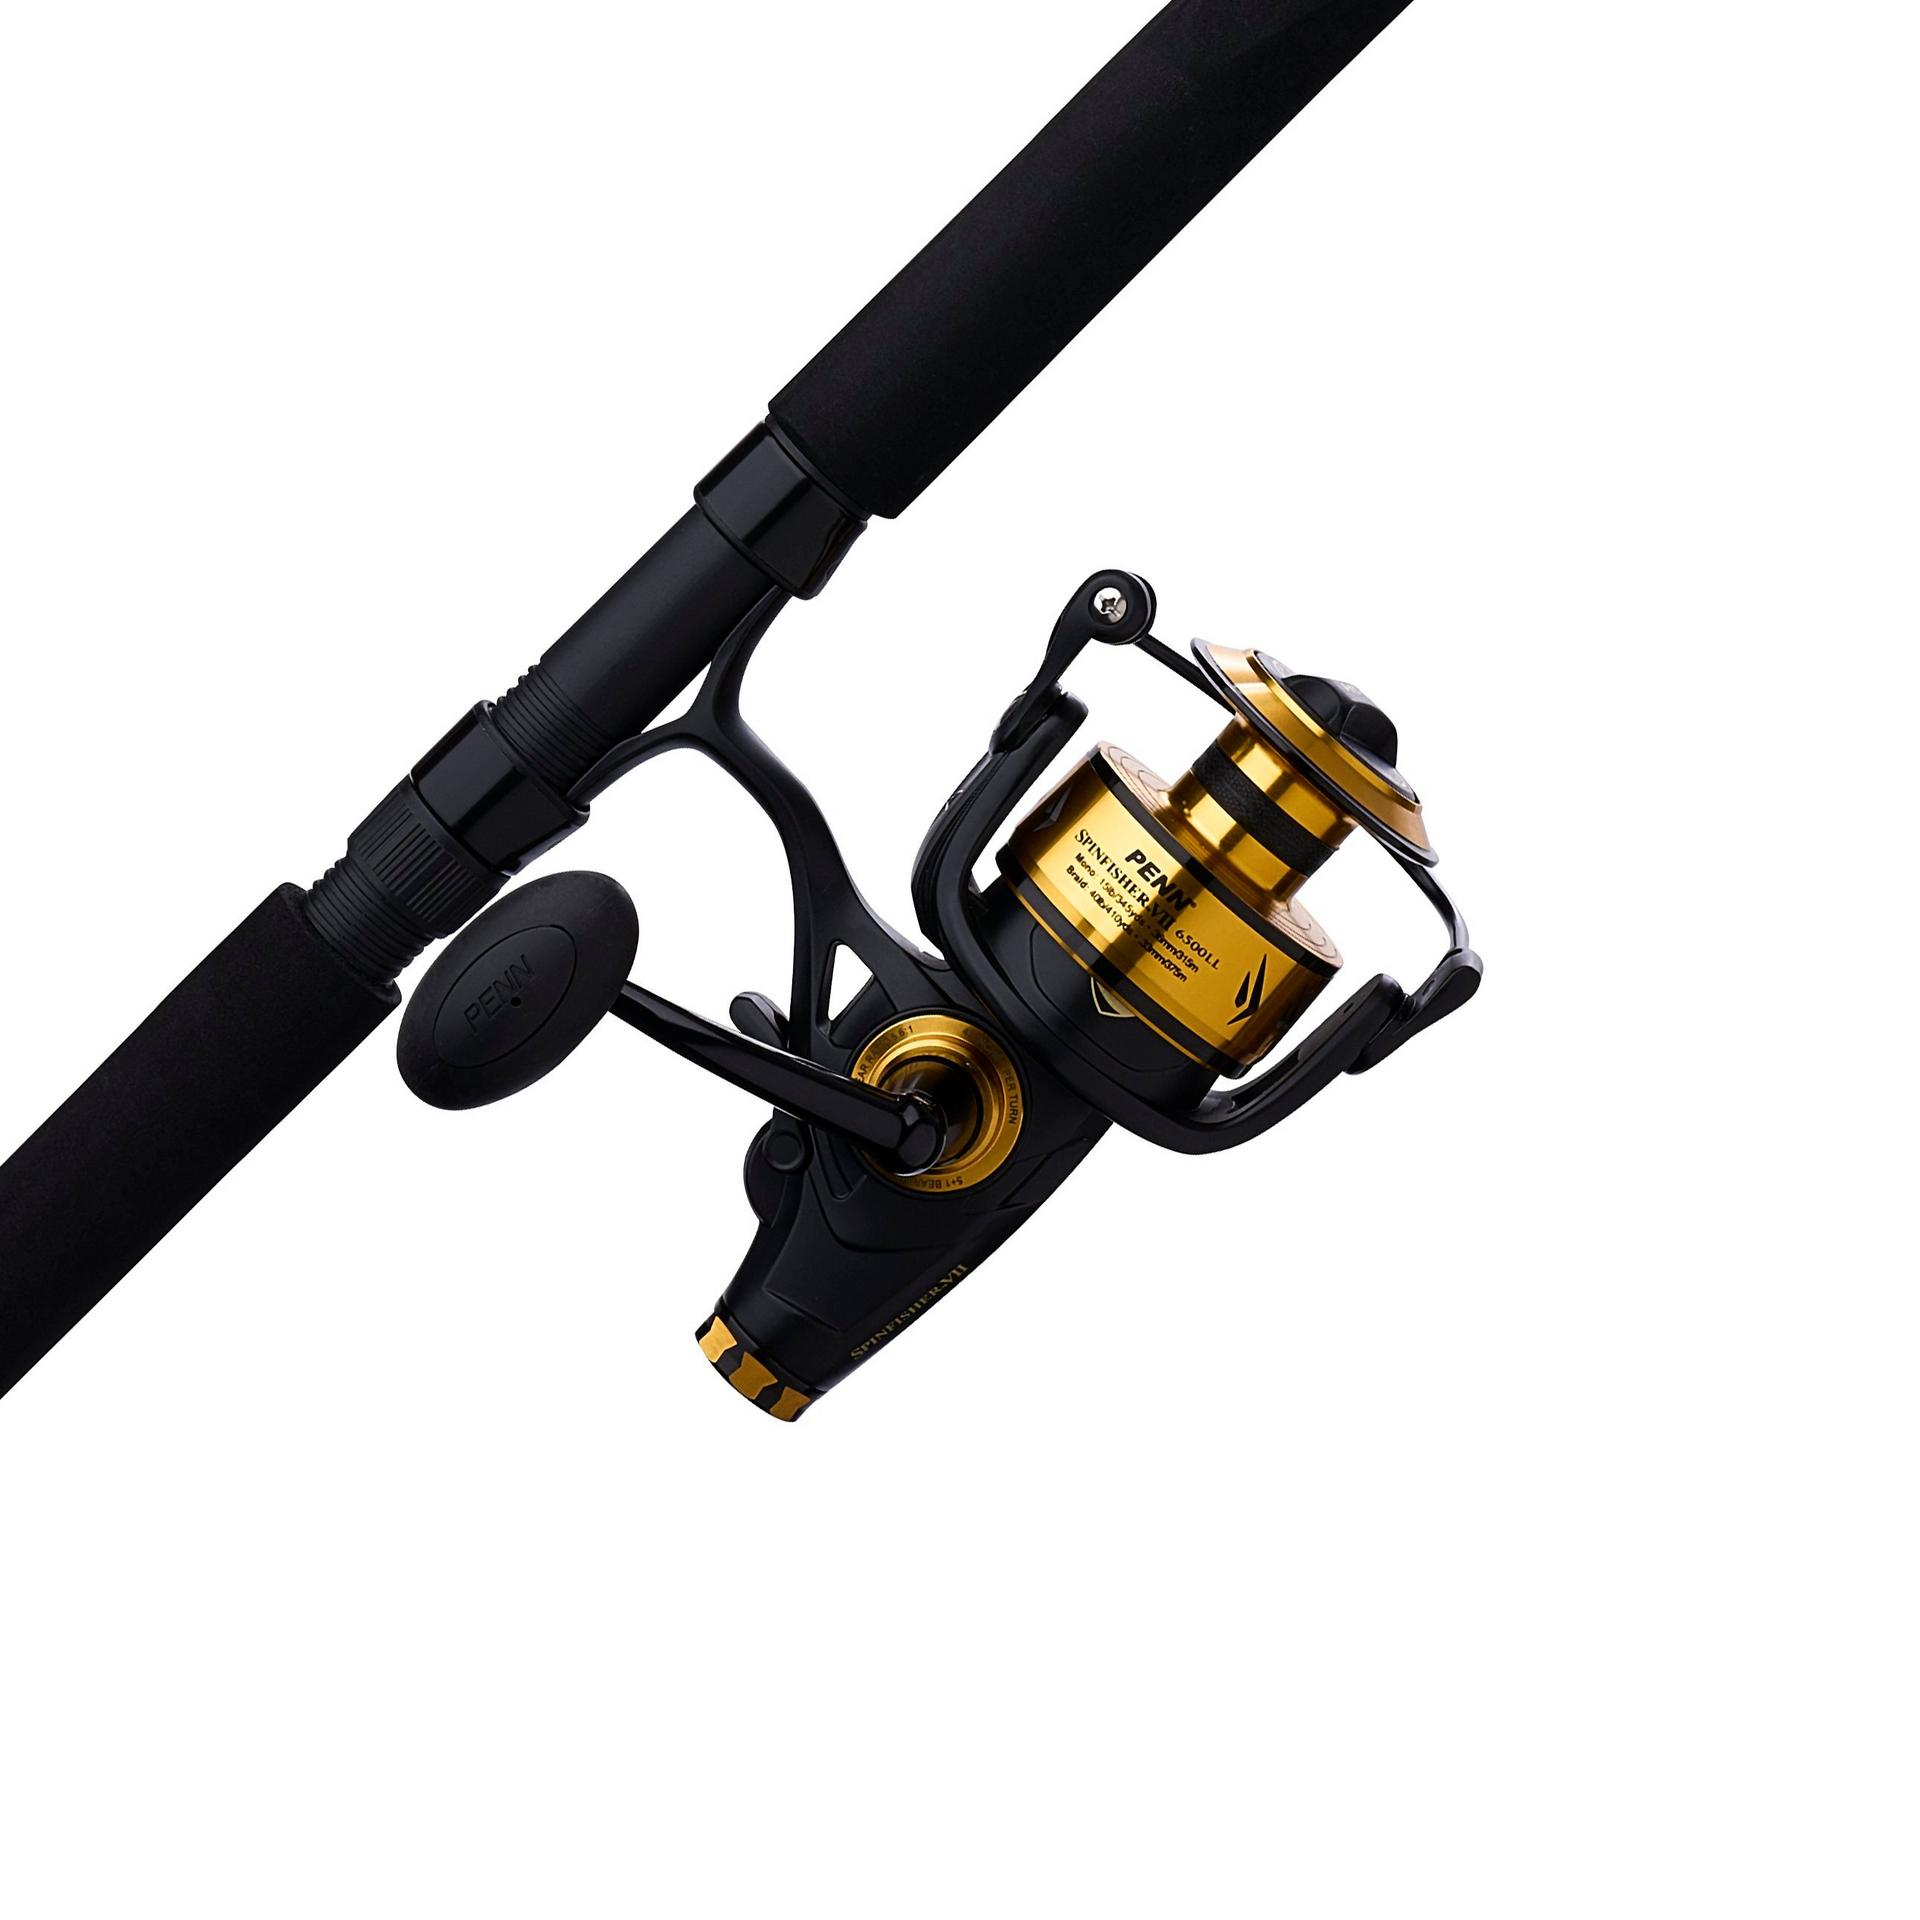  CLISPEED 2 Pcs Fishing Rod Sensor Light Fishing Light